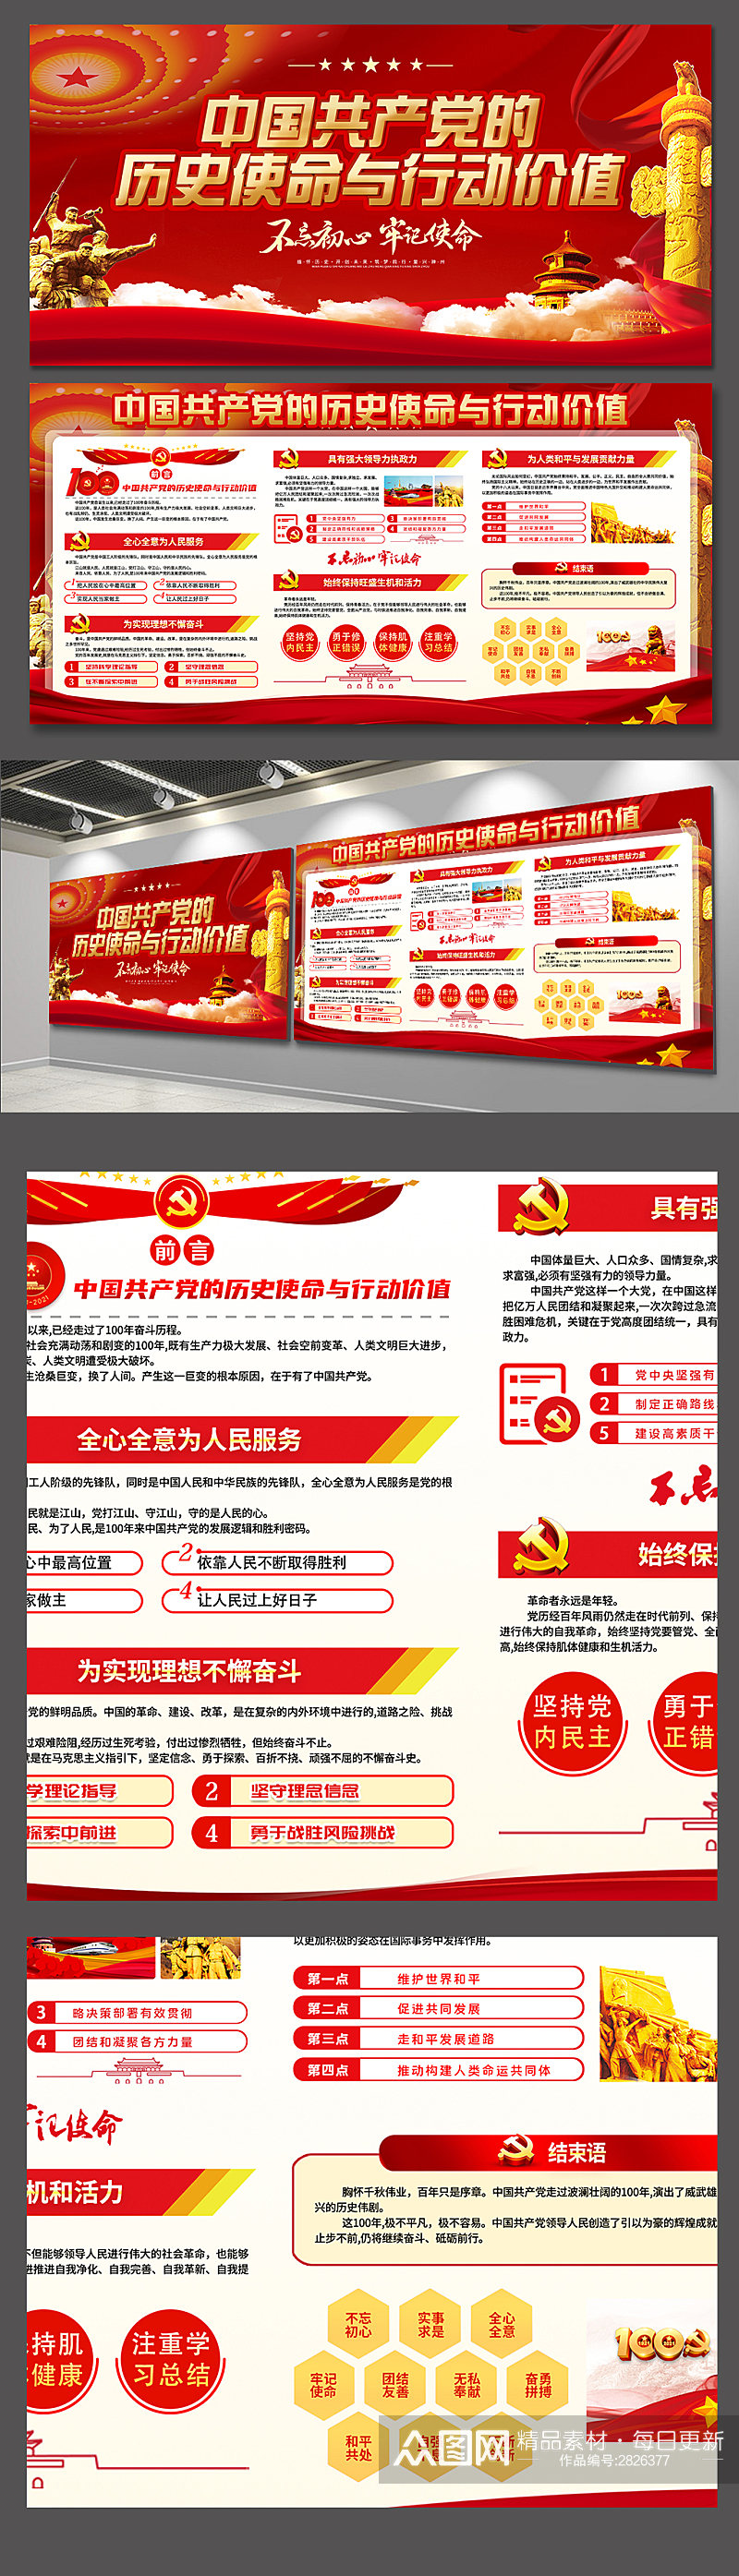 红色中国共产党的历史使命与行动价值展板素材